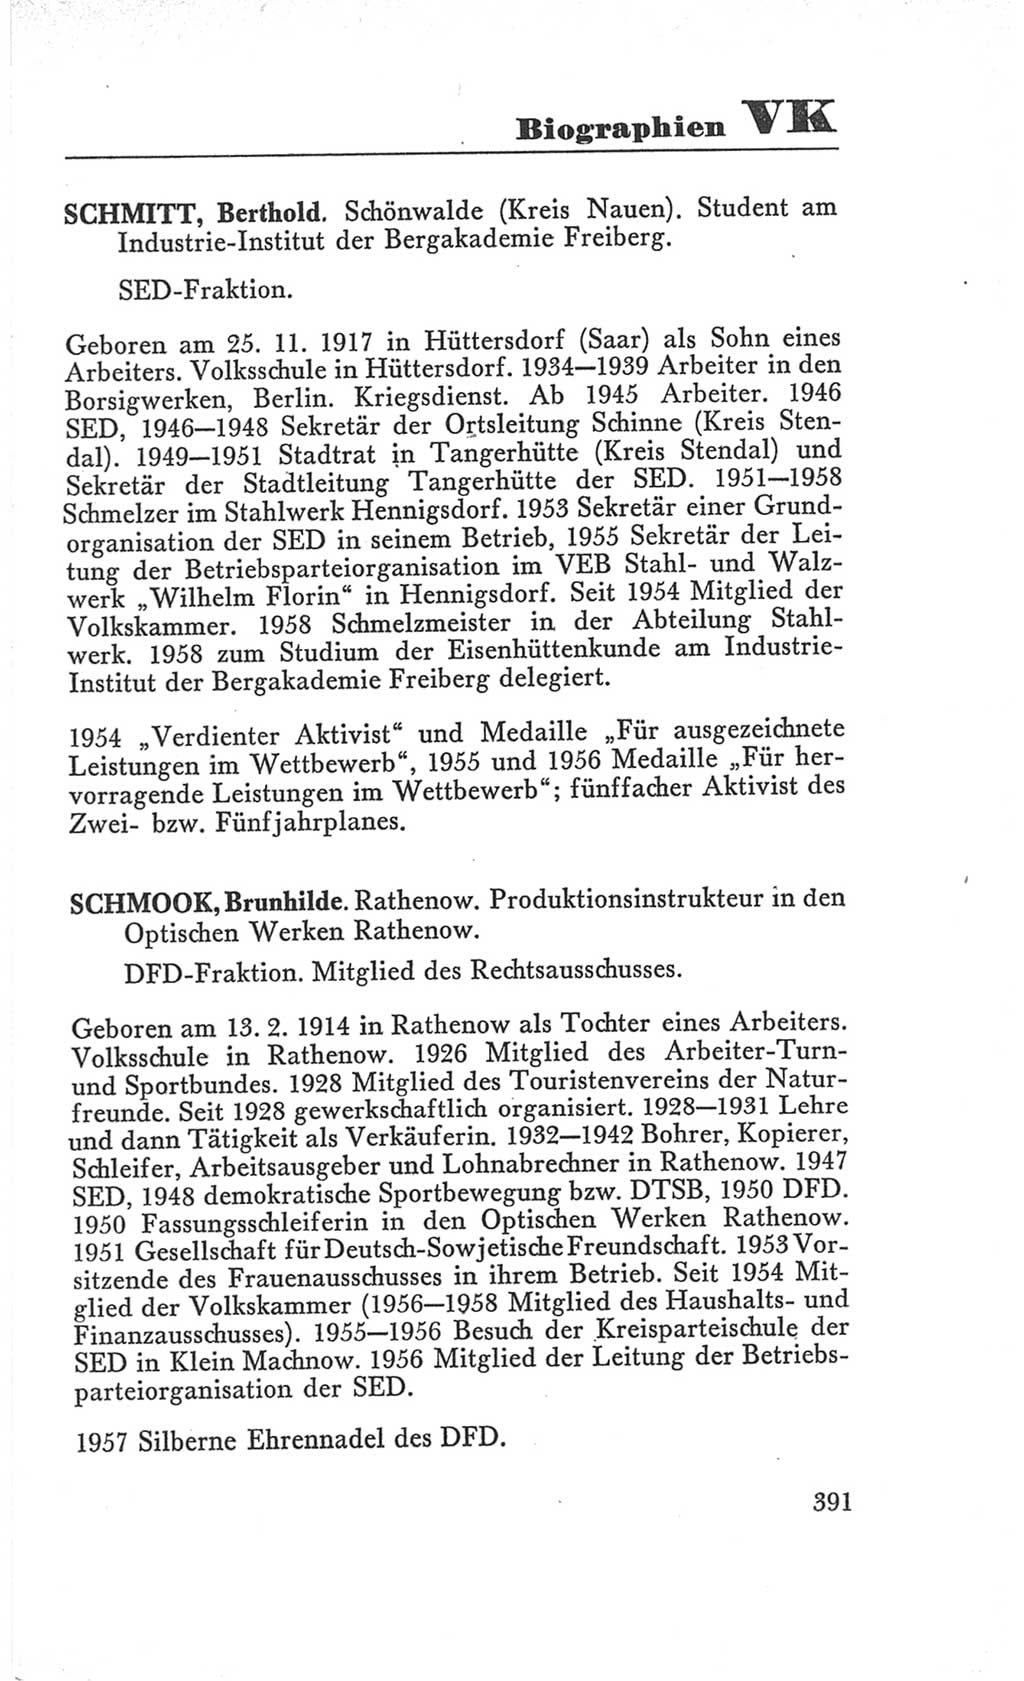 Handbuch der Volkskammer (VK) der Deutschen Demokratischen Republik (DDR), 3. Wahlperiode 1958-1963, Seite 391 (Hdb. VK. DDR 3. WP. 1958-1963, S. 391)